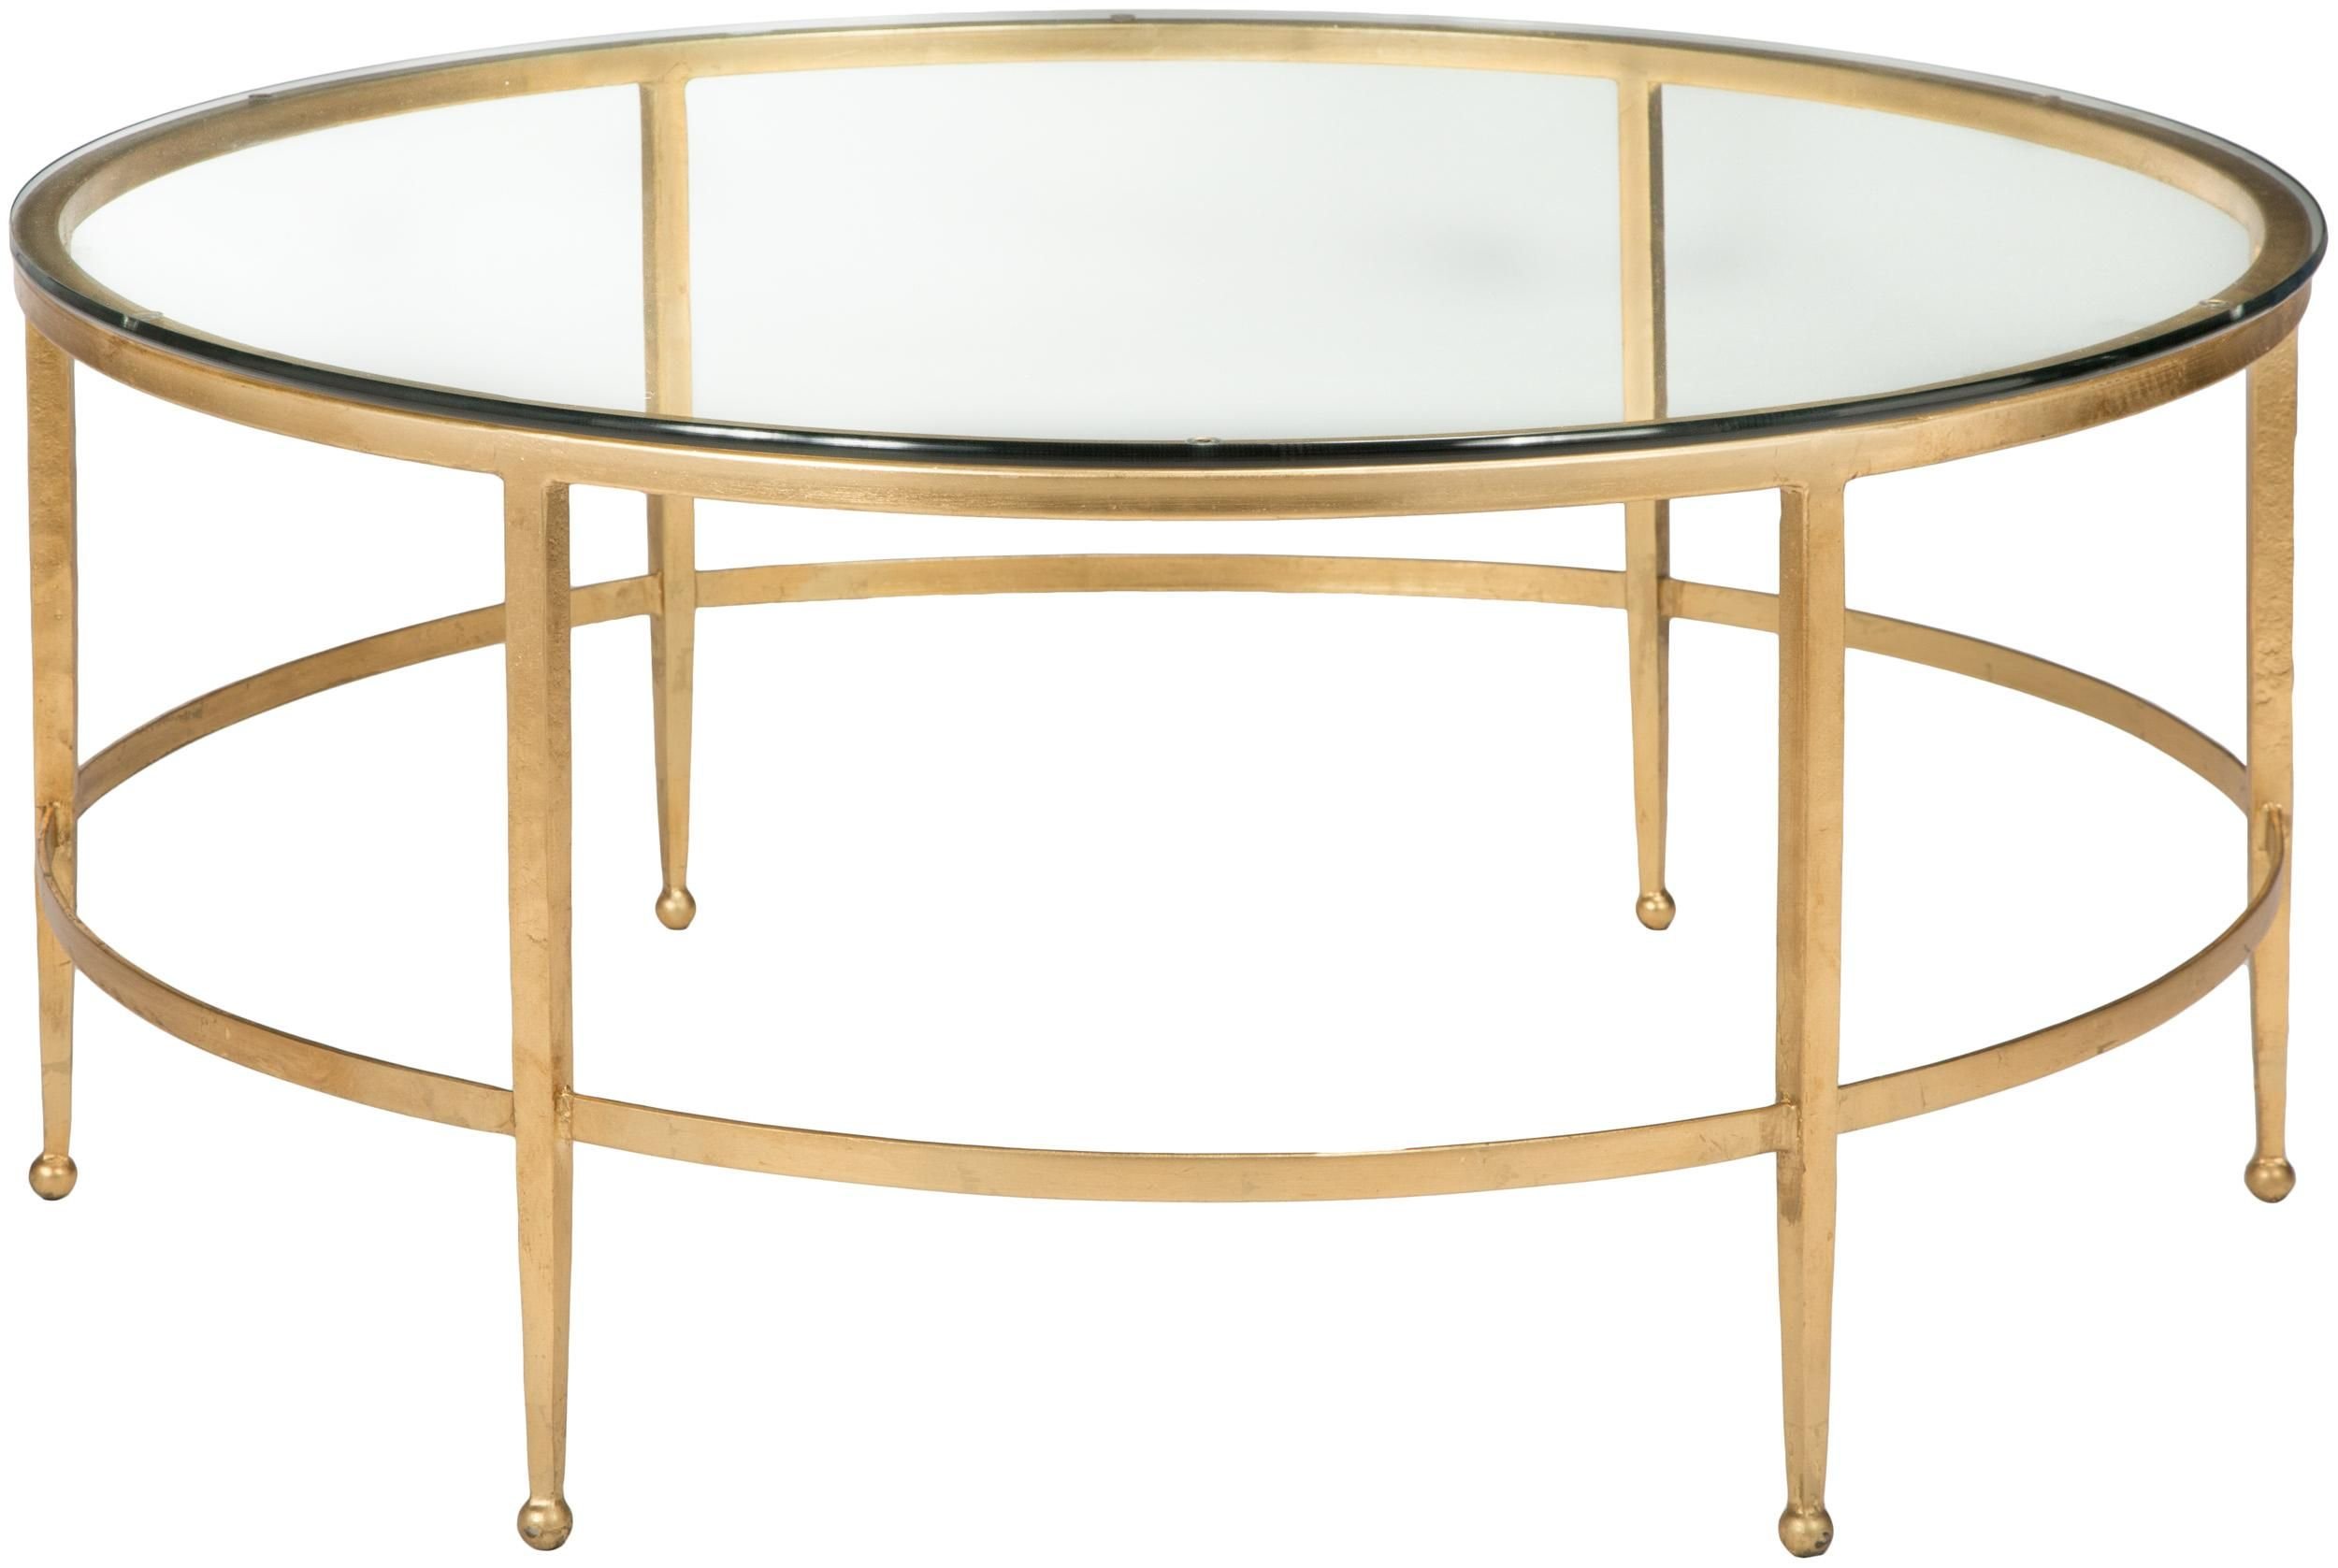 Стол полукруг. Кофейный столик Gilbert Side Table Gold. Стол dikline h140. T5911-0 журнальный столик Landrace- Antique Gold finish. Журнальный столик полукруглый.